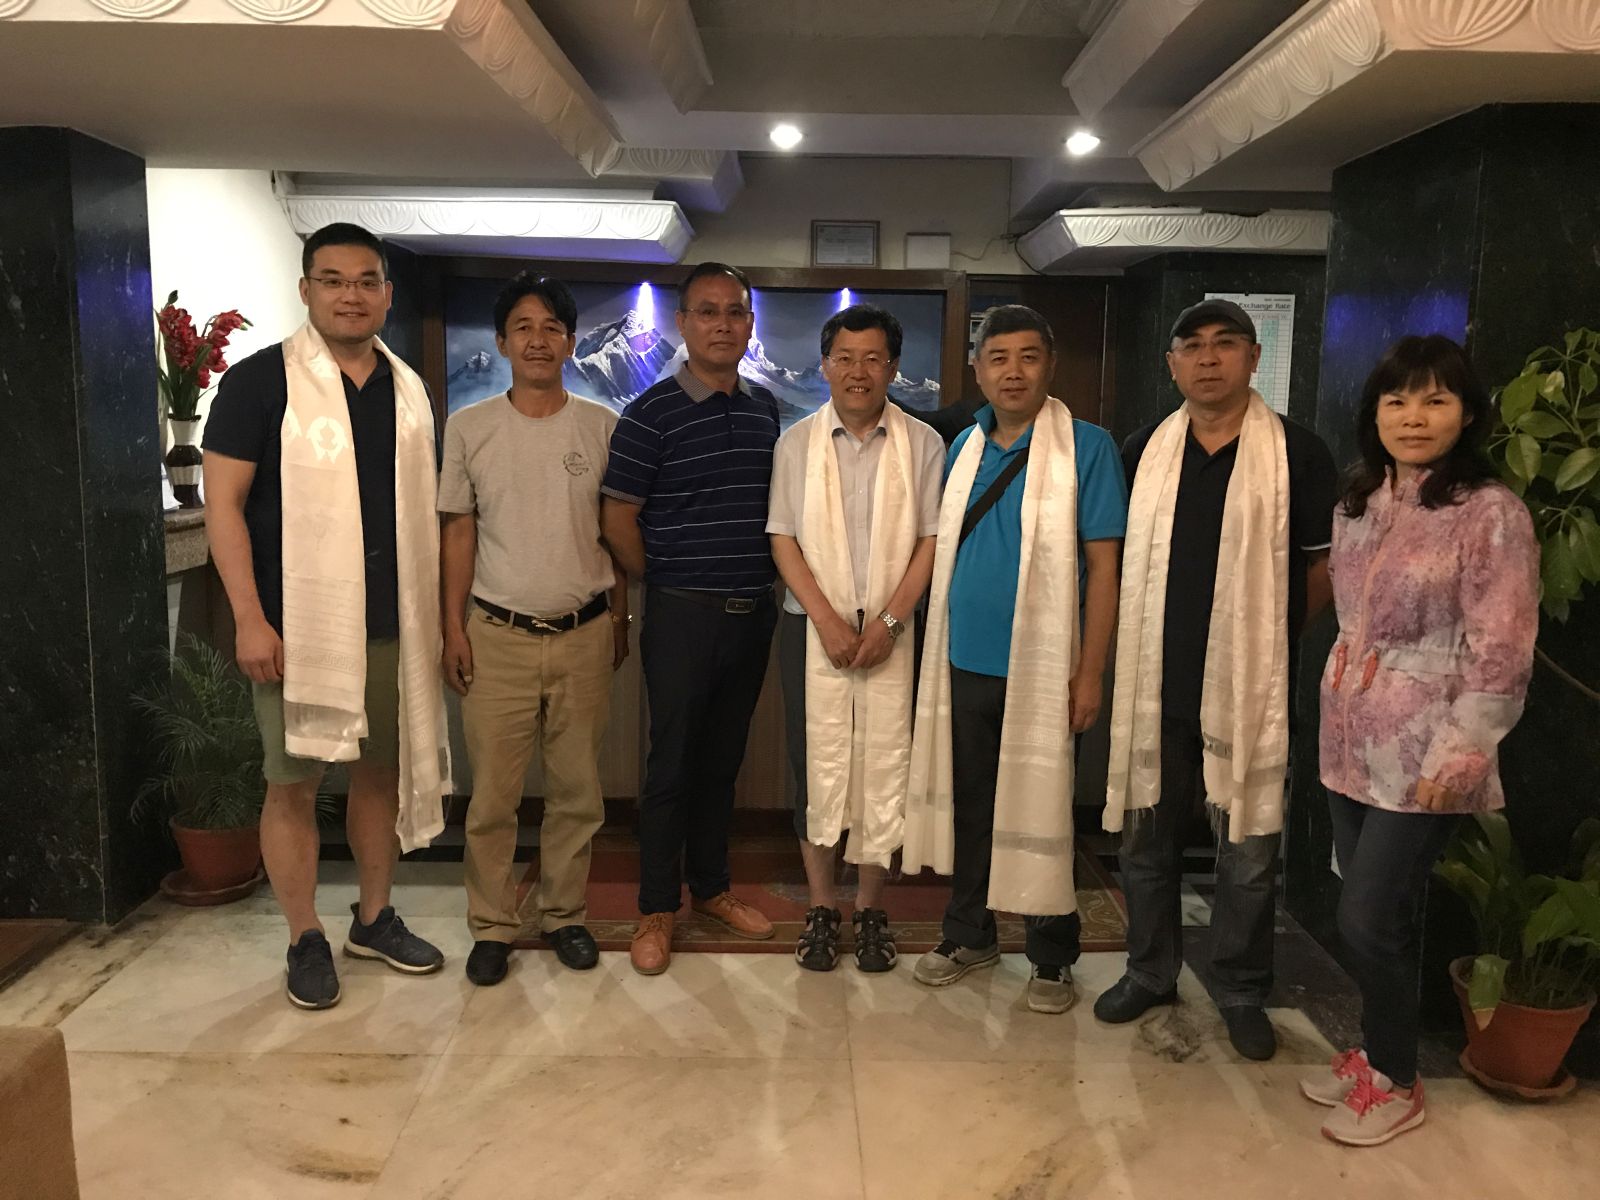 尼泊尔—中国凯拉斯文化促进会领导欢迎代表团一行